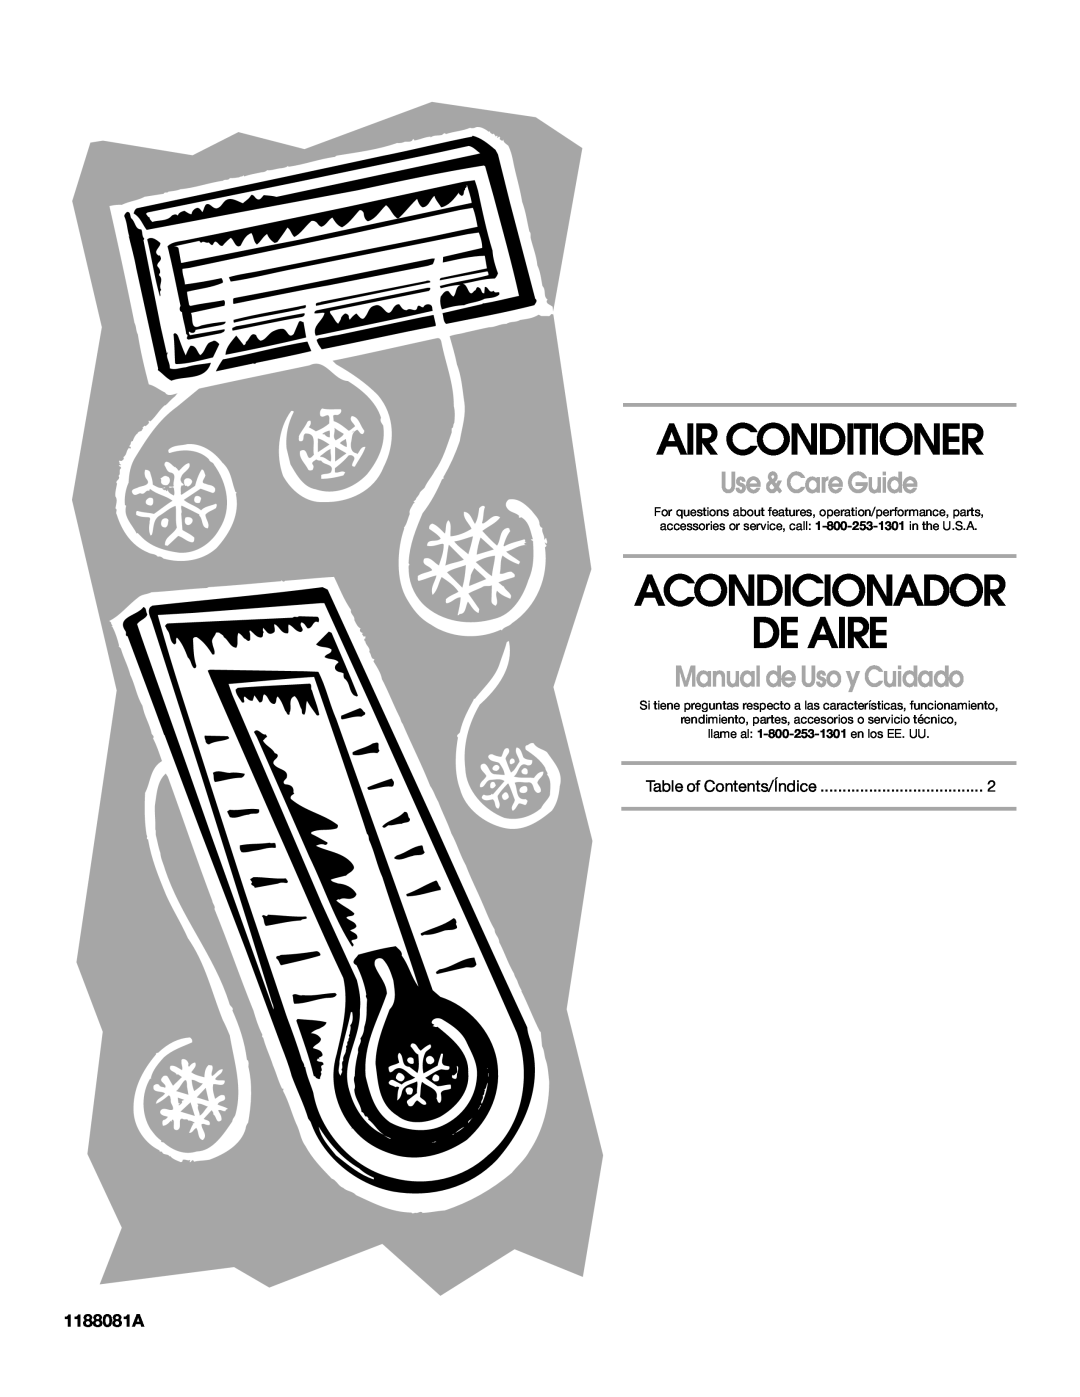 Whirlpool ACC082XR0 manual 1188081A, Air Conditioner, Acondicionador De Aire, Use & Care Guide, Manual de Uso y Cuidado 